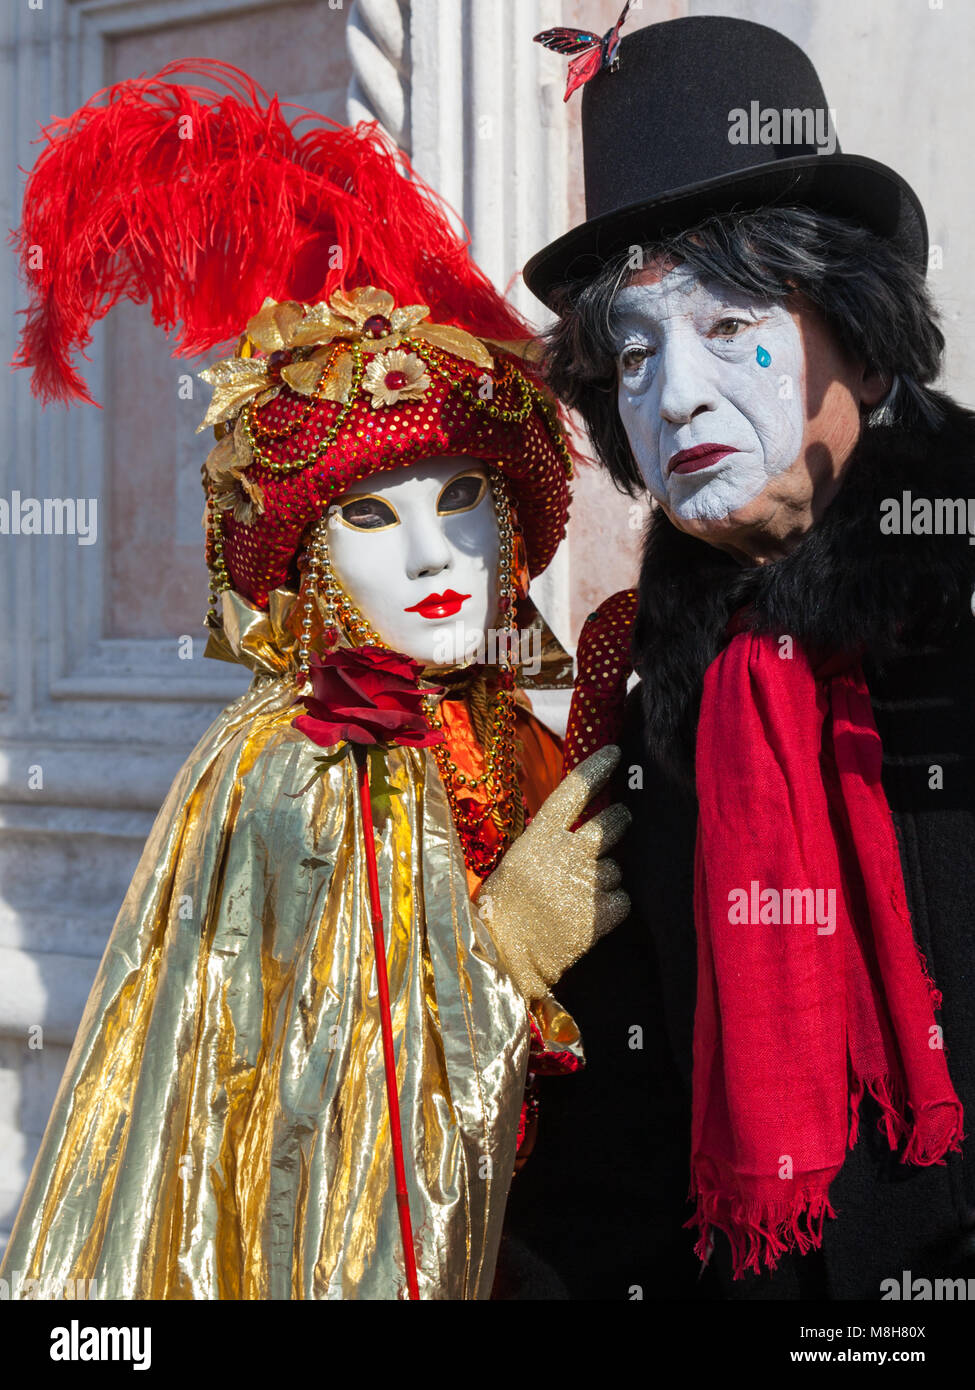 Frau und Pierrot oder Pierot trauriger Clown in Kostümen und Maske,  Karneval von Venedig, Karneval von Venedig, Venetien, Italien  Stockfotografie - Alamy